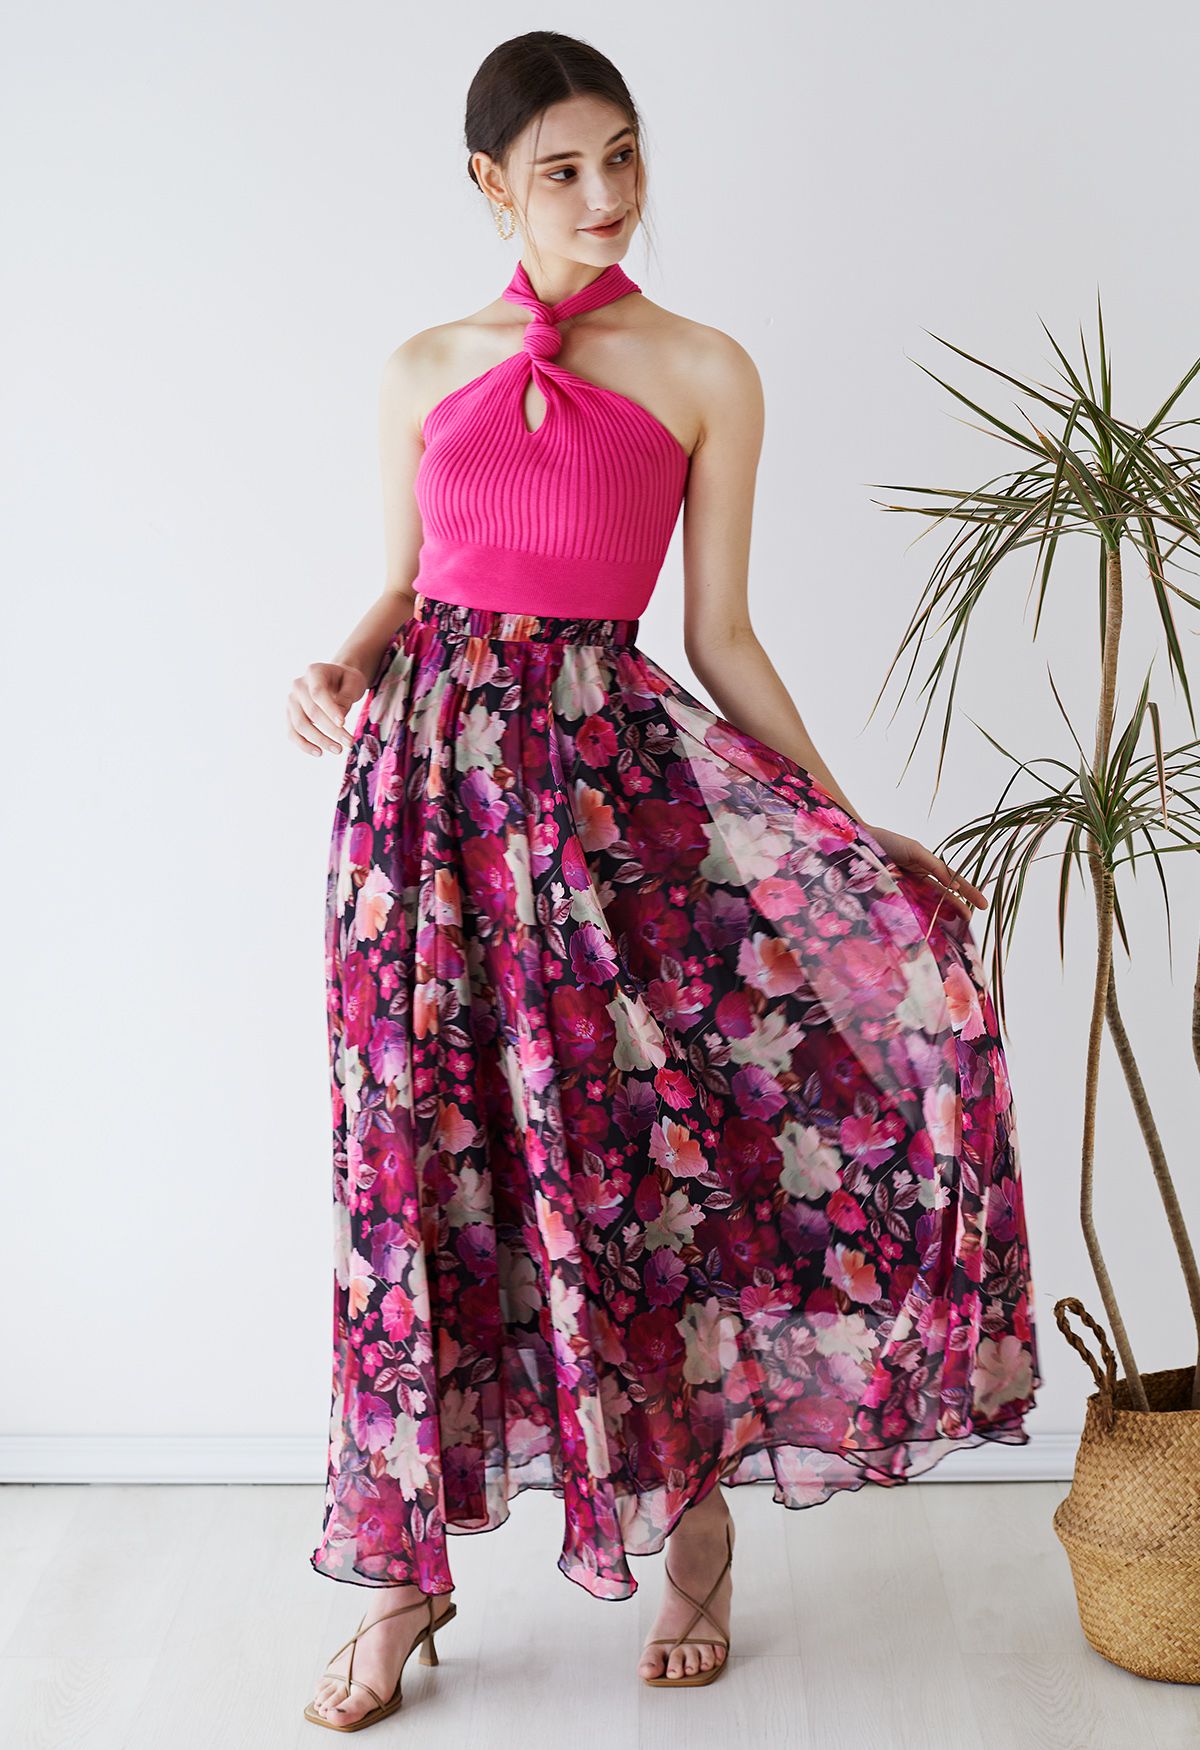 Falda larga de gasa floral rosa vibrante